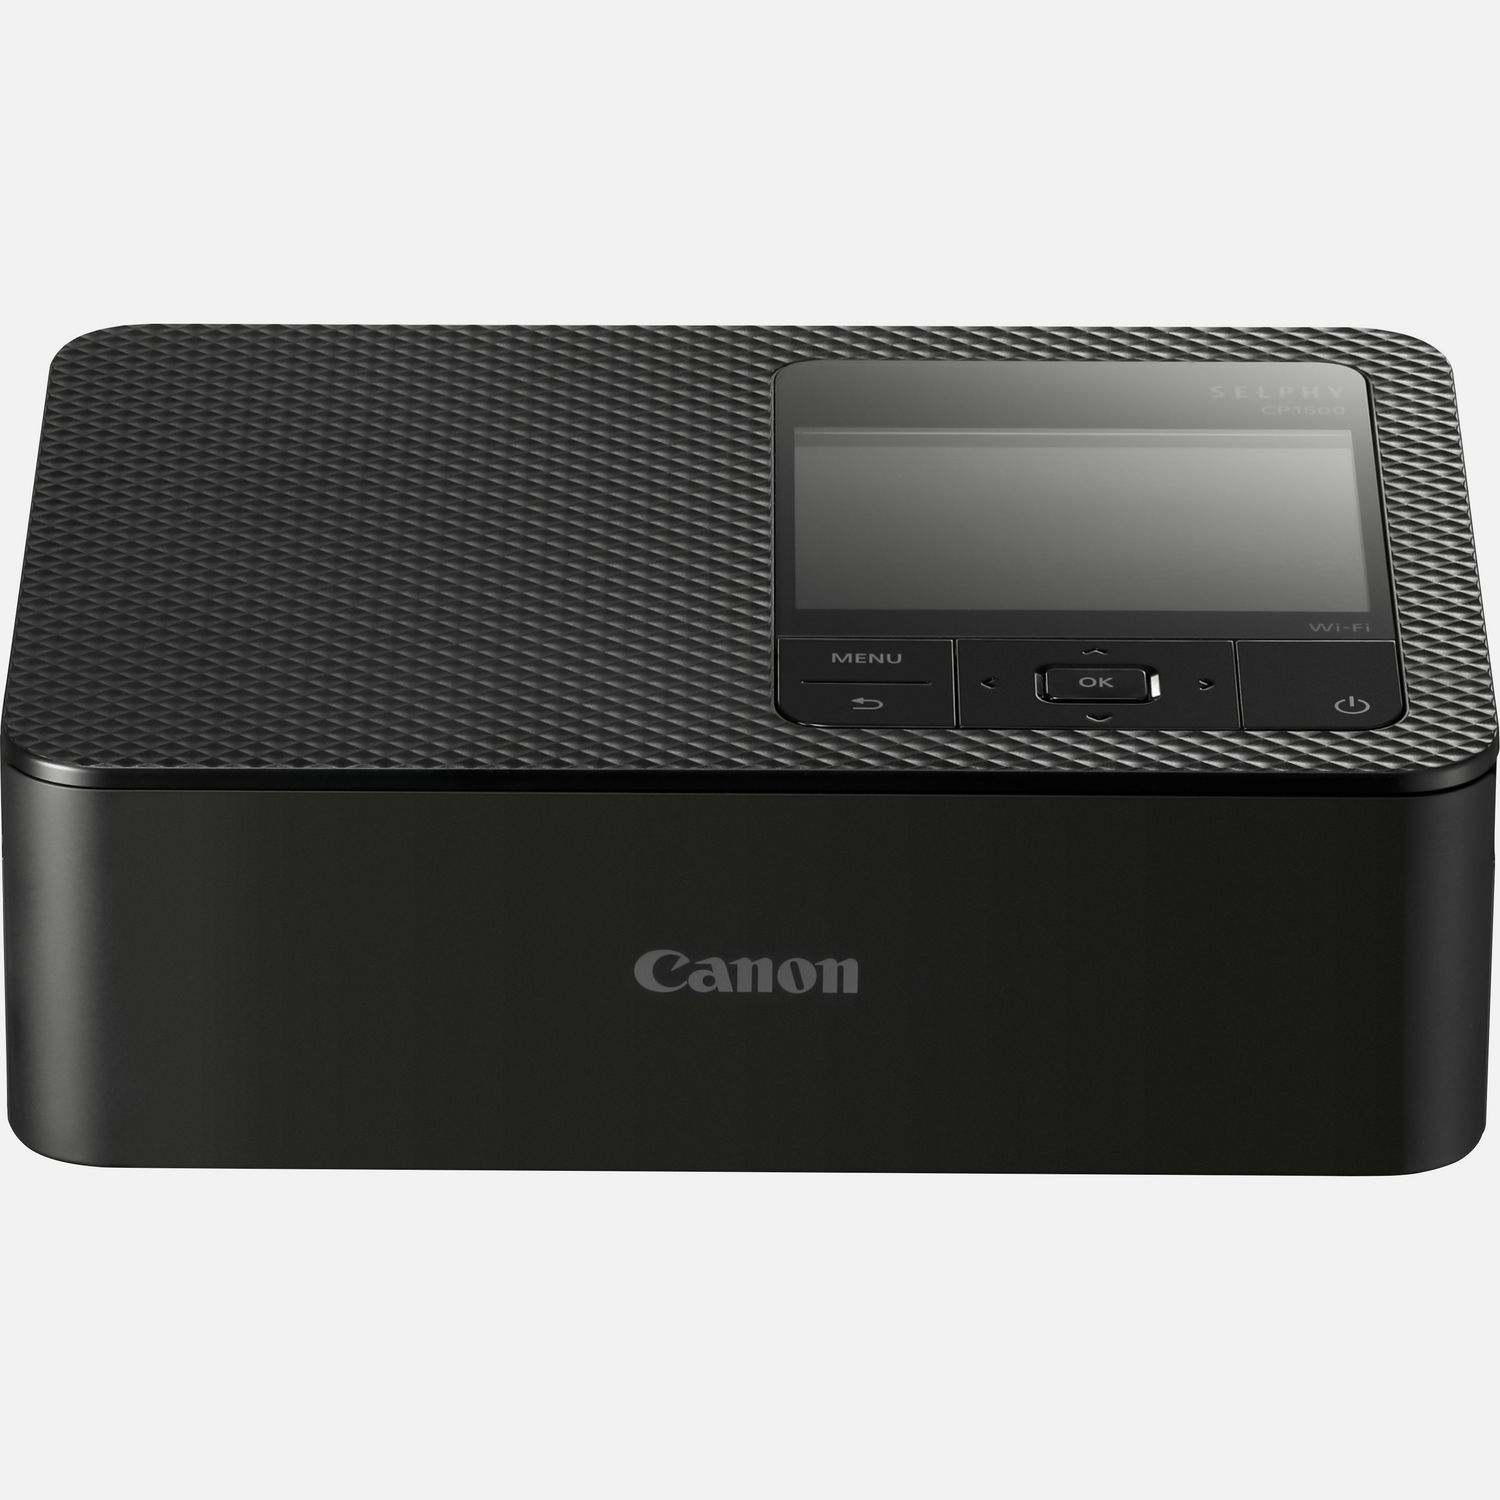 Image of Stampante fotografica portatile Canon SELPHY CP1500 a colori - nero